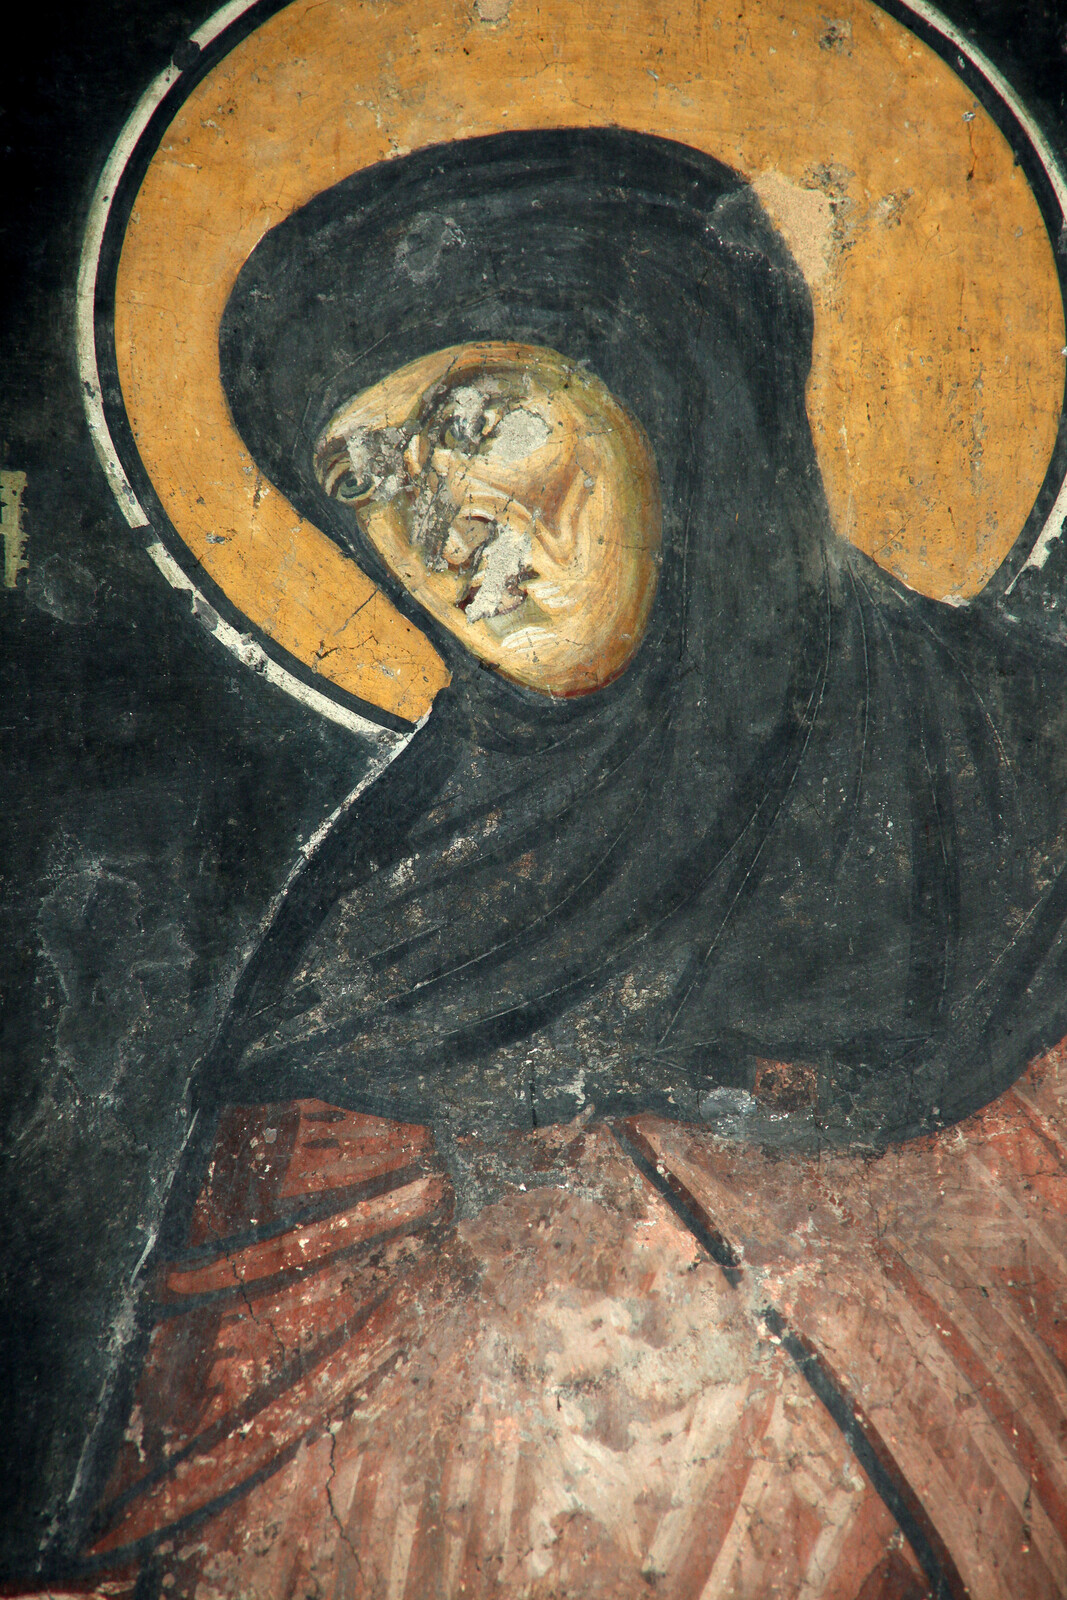 Serbian Queen Jelena as a nun, detail